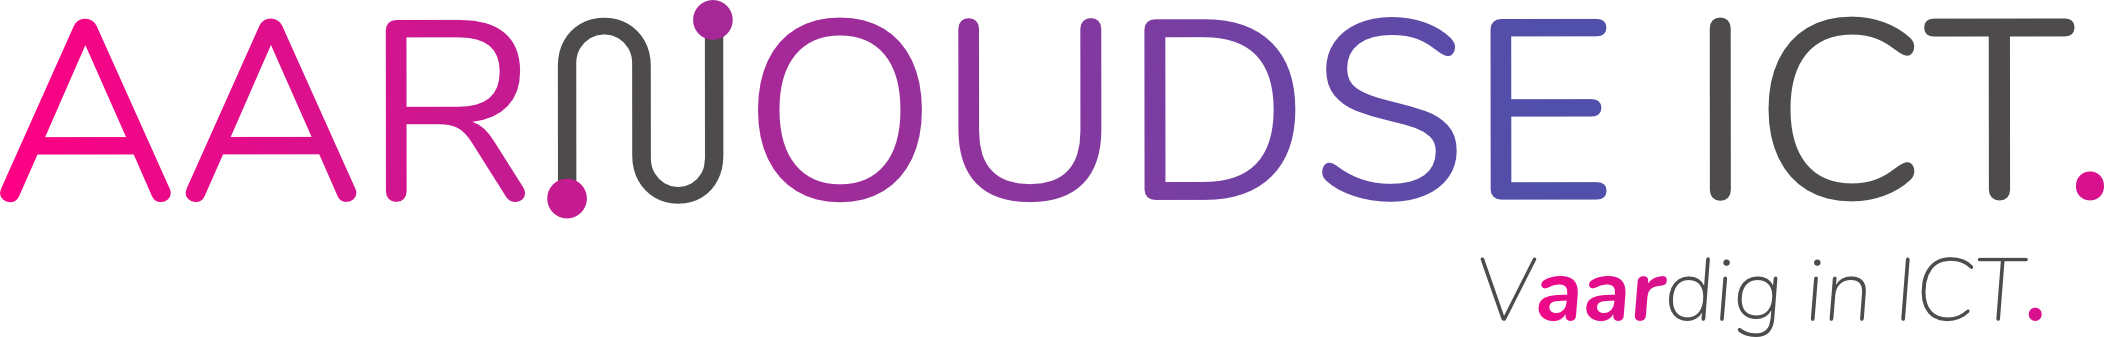 Logo AARNOUDSE ICT full colour met slogan